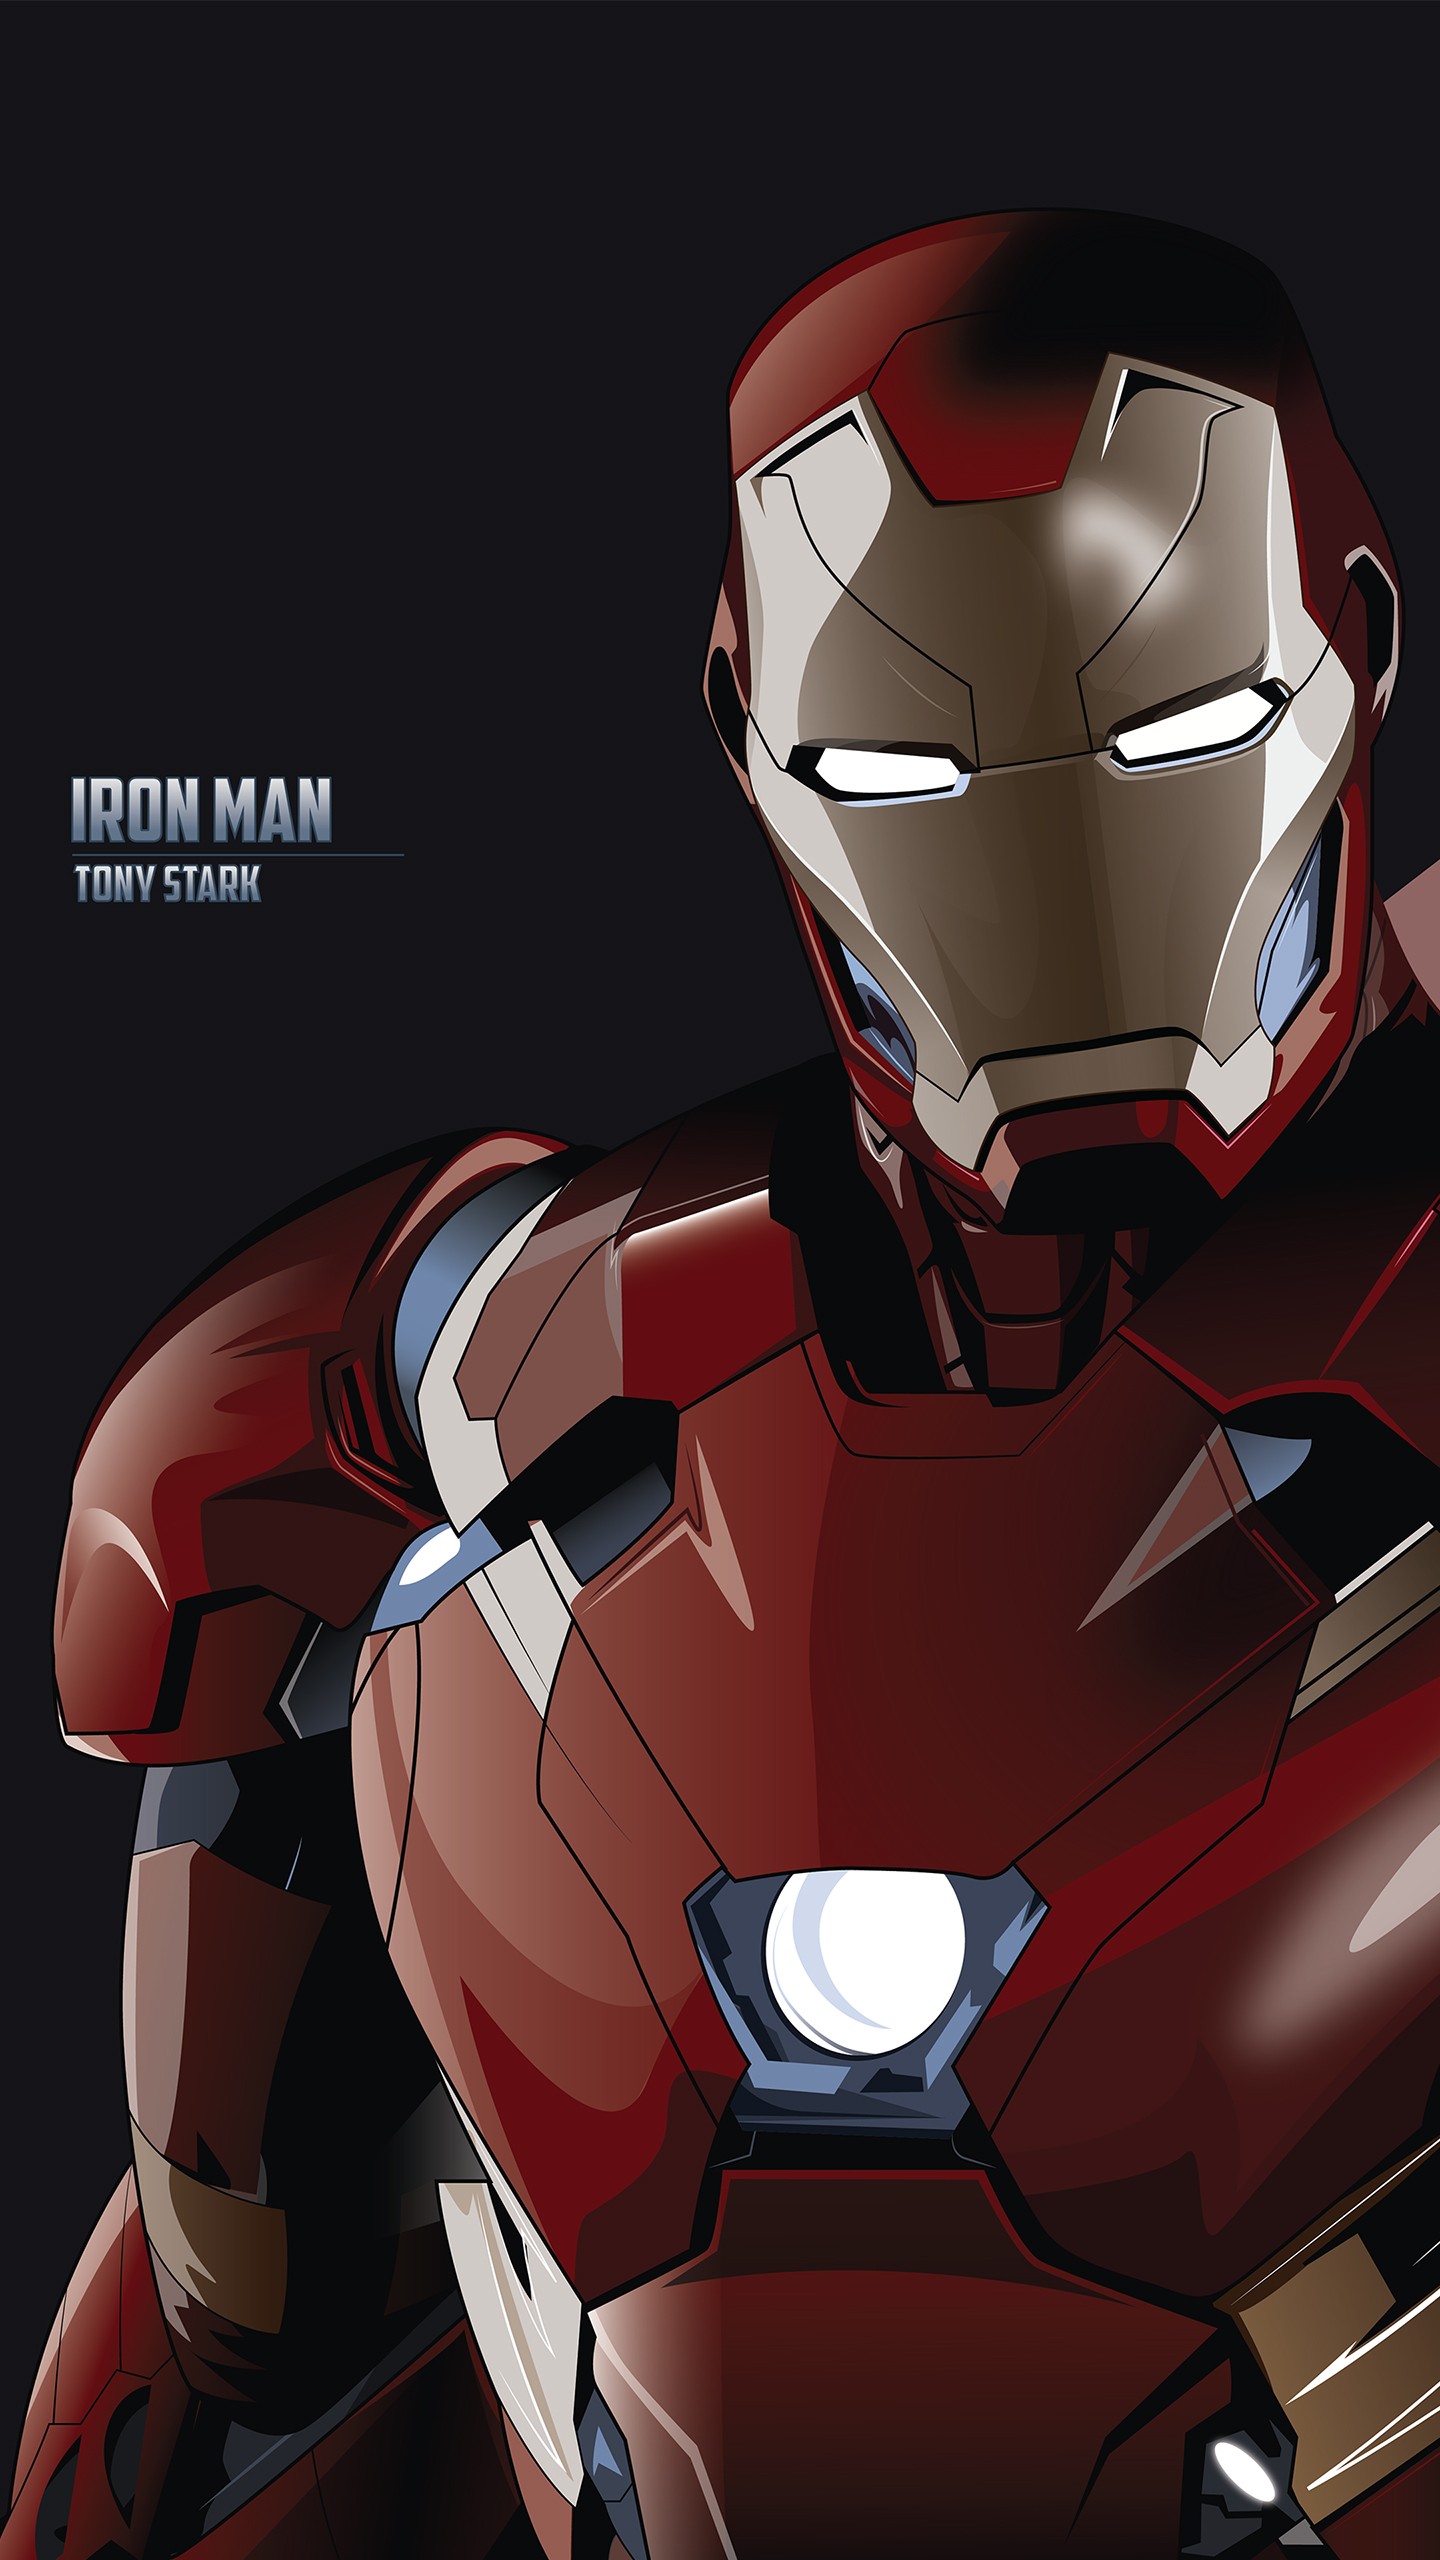 iron man fond d'écran hd pour android,personnage fictif,super héros,homme de fer,vengeurs,héros